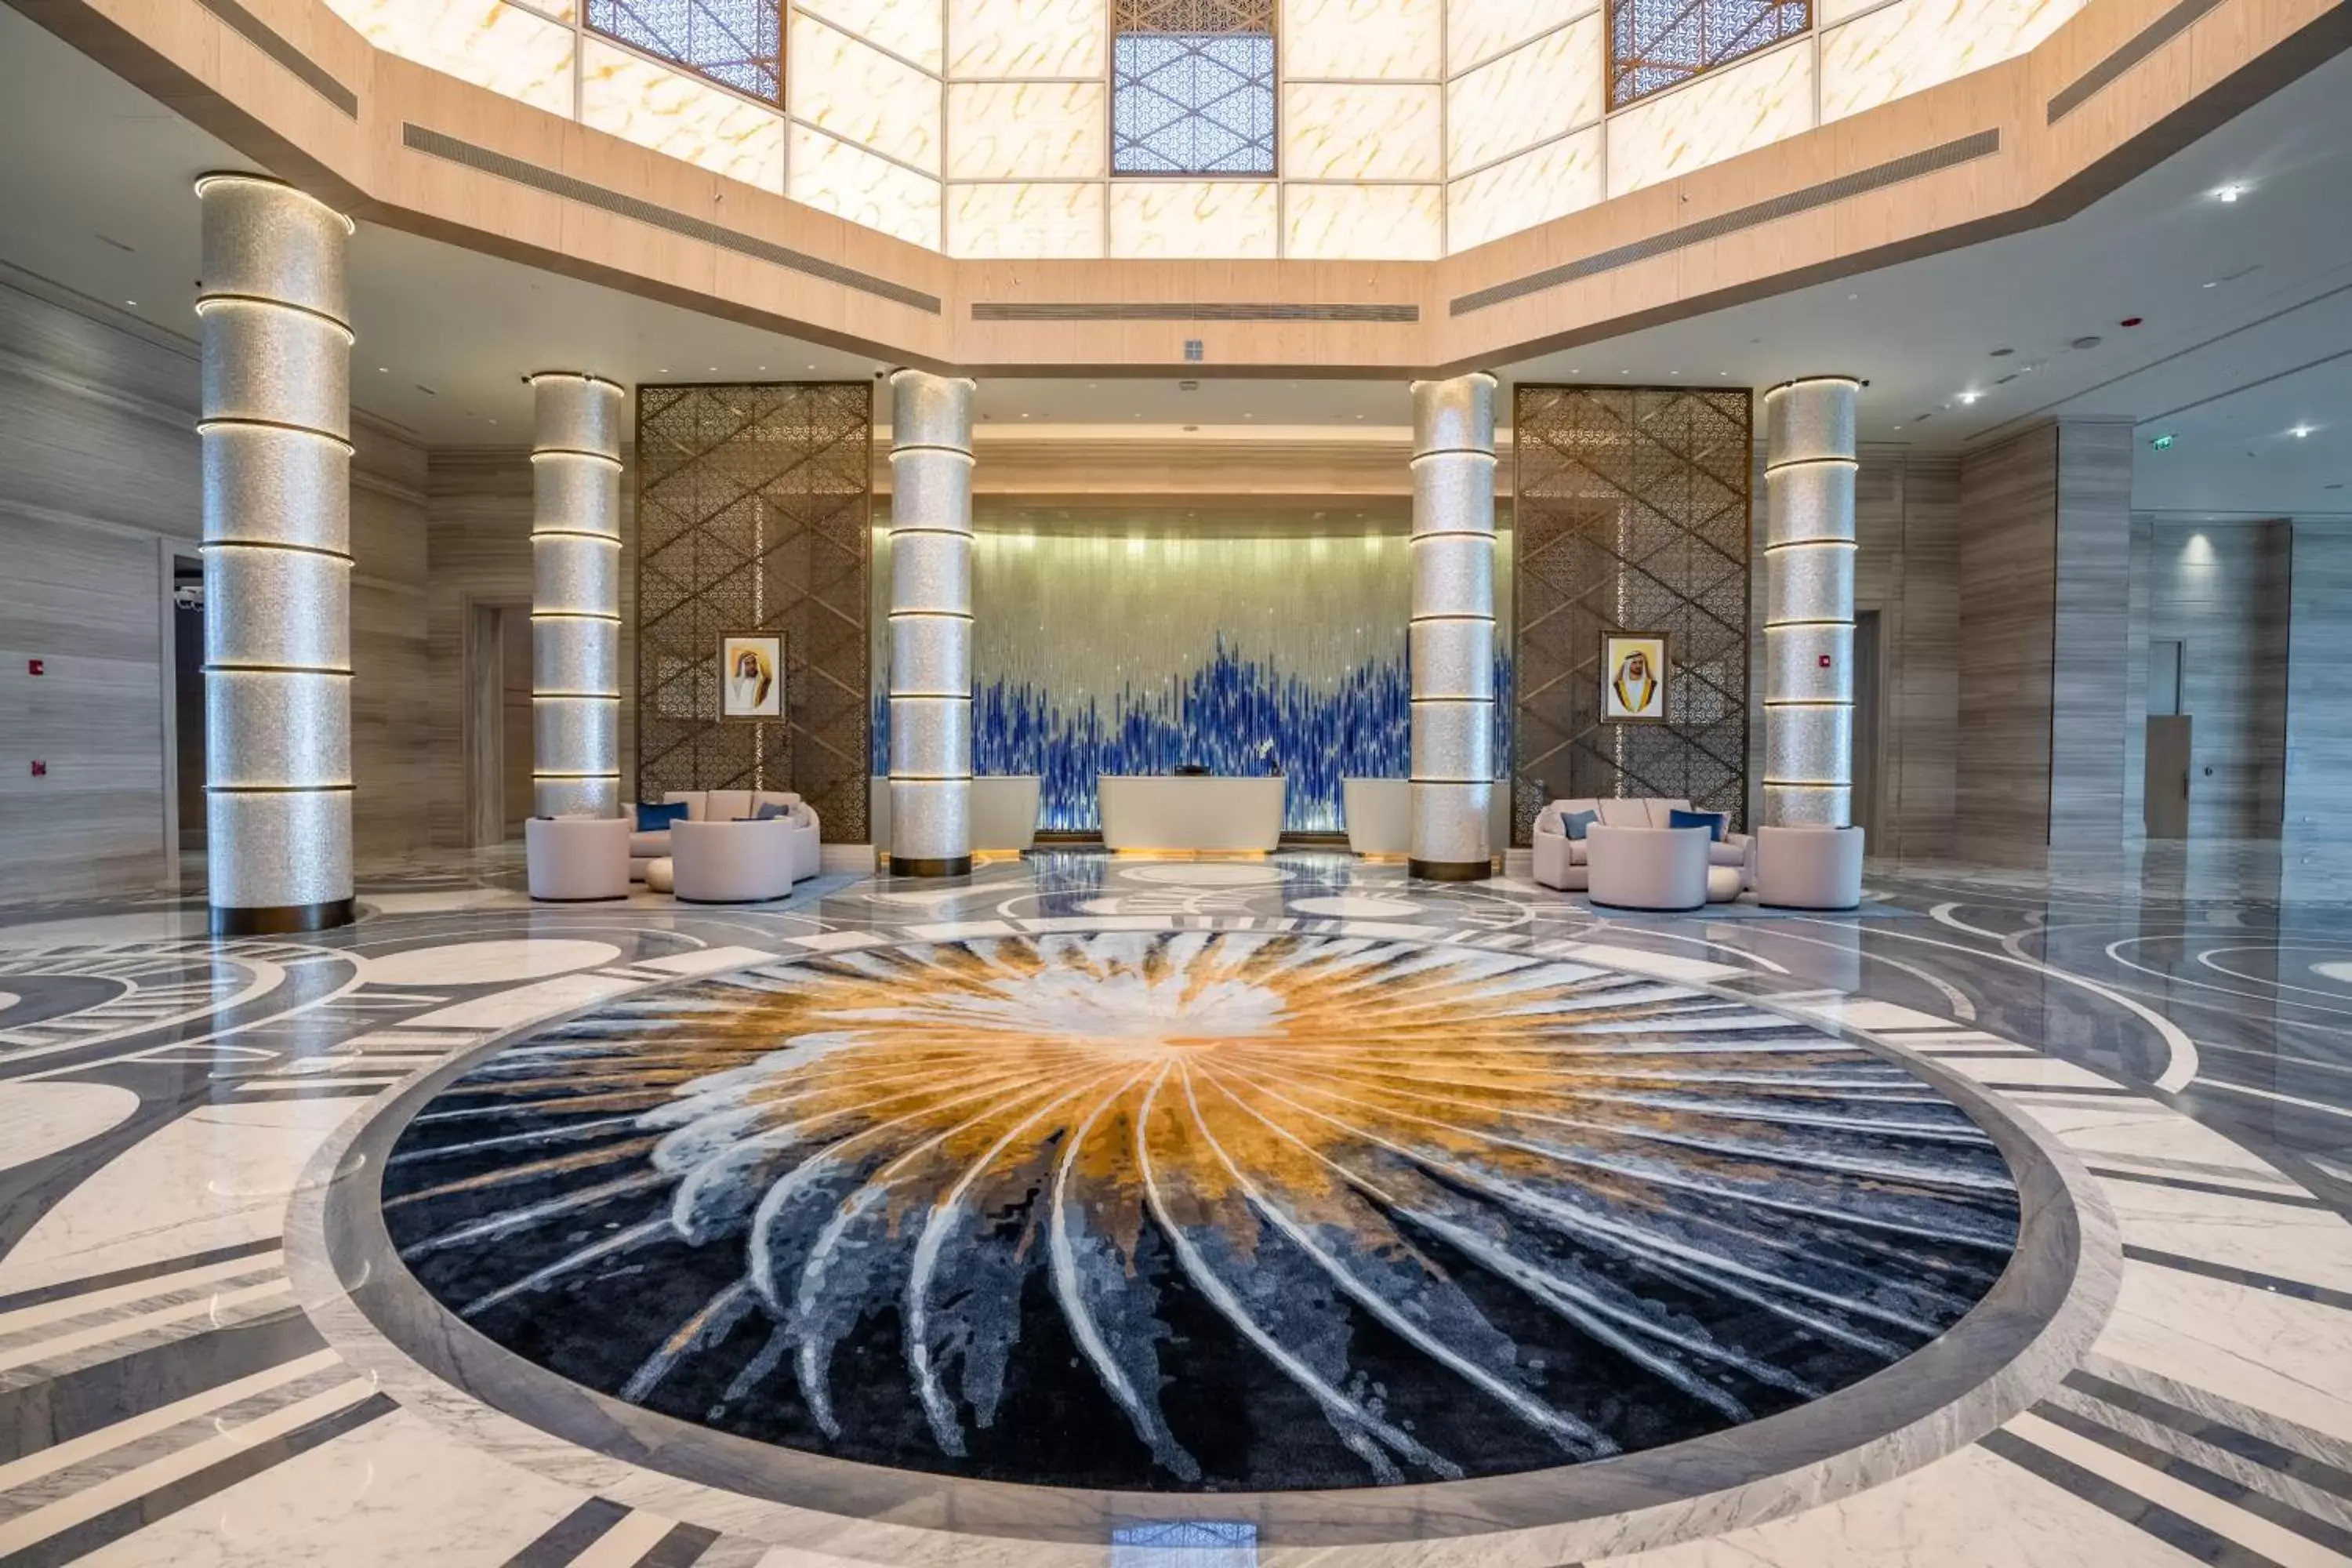 Lobby or reception in Rixos Marina Abu Dhabi